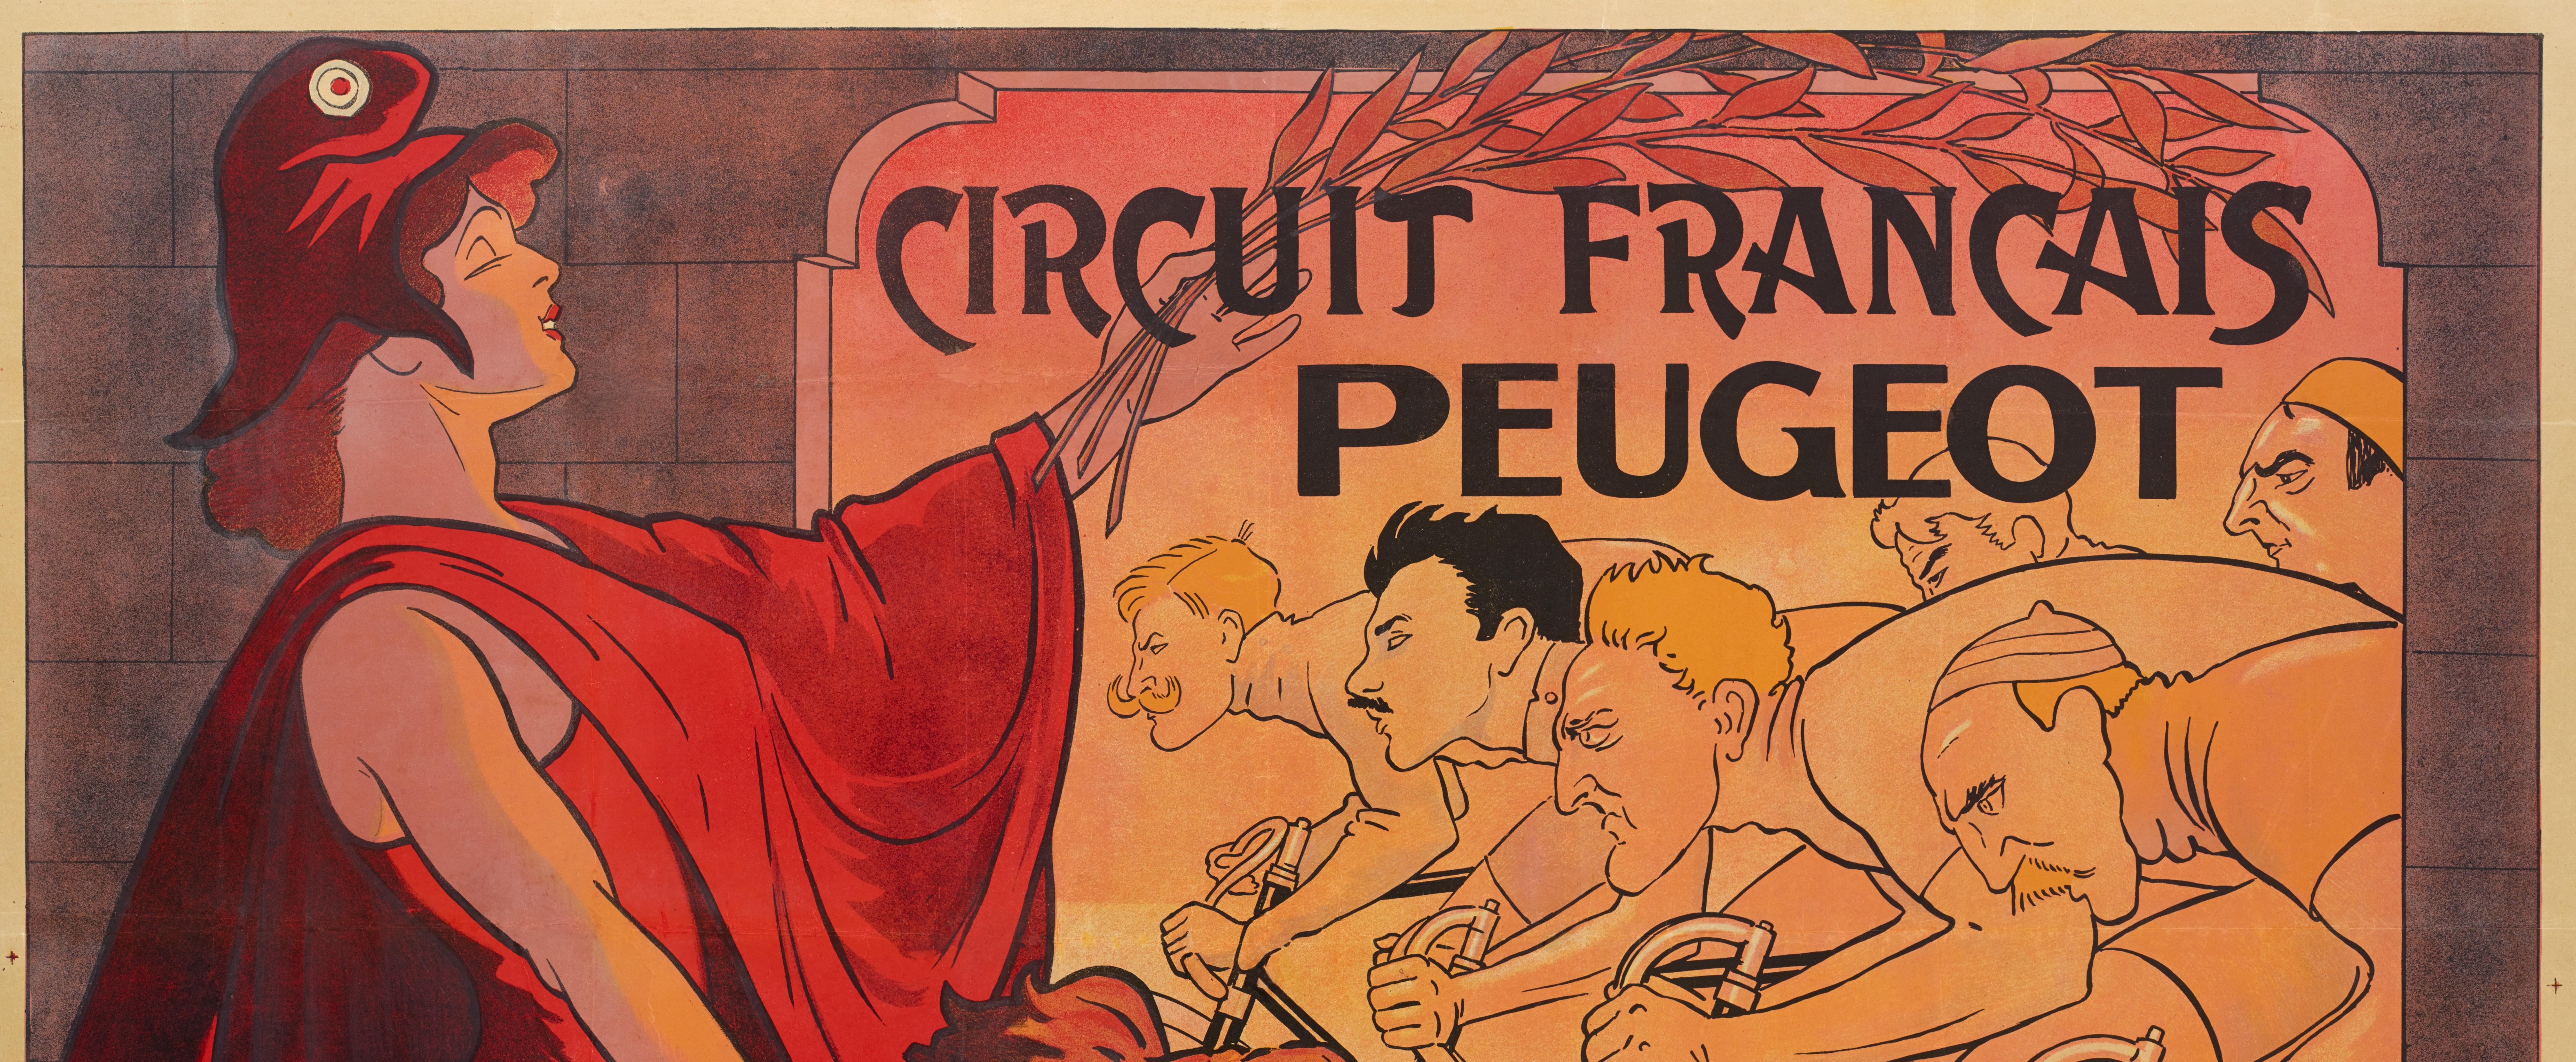 Originales Vintage-Plakat für den Circuit Francais Peugeot von Mich aus dem Jahr 1911.

Künstler: Mich (1881-1923)
Titel: Französische Rennstrecke Peugeot
Datum: 1911
Größe: 63 x 46,9 Zoll. / 160 x 119 cm.
Drucker : Imp L. Revon et Cie, 93 rue